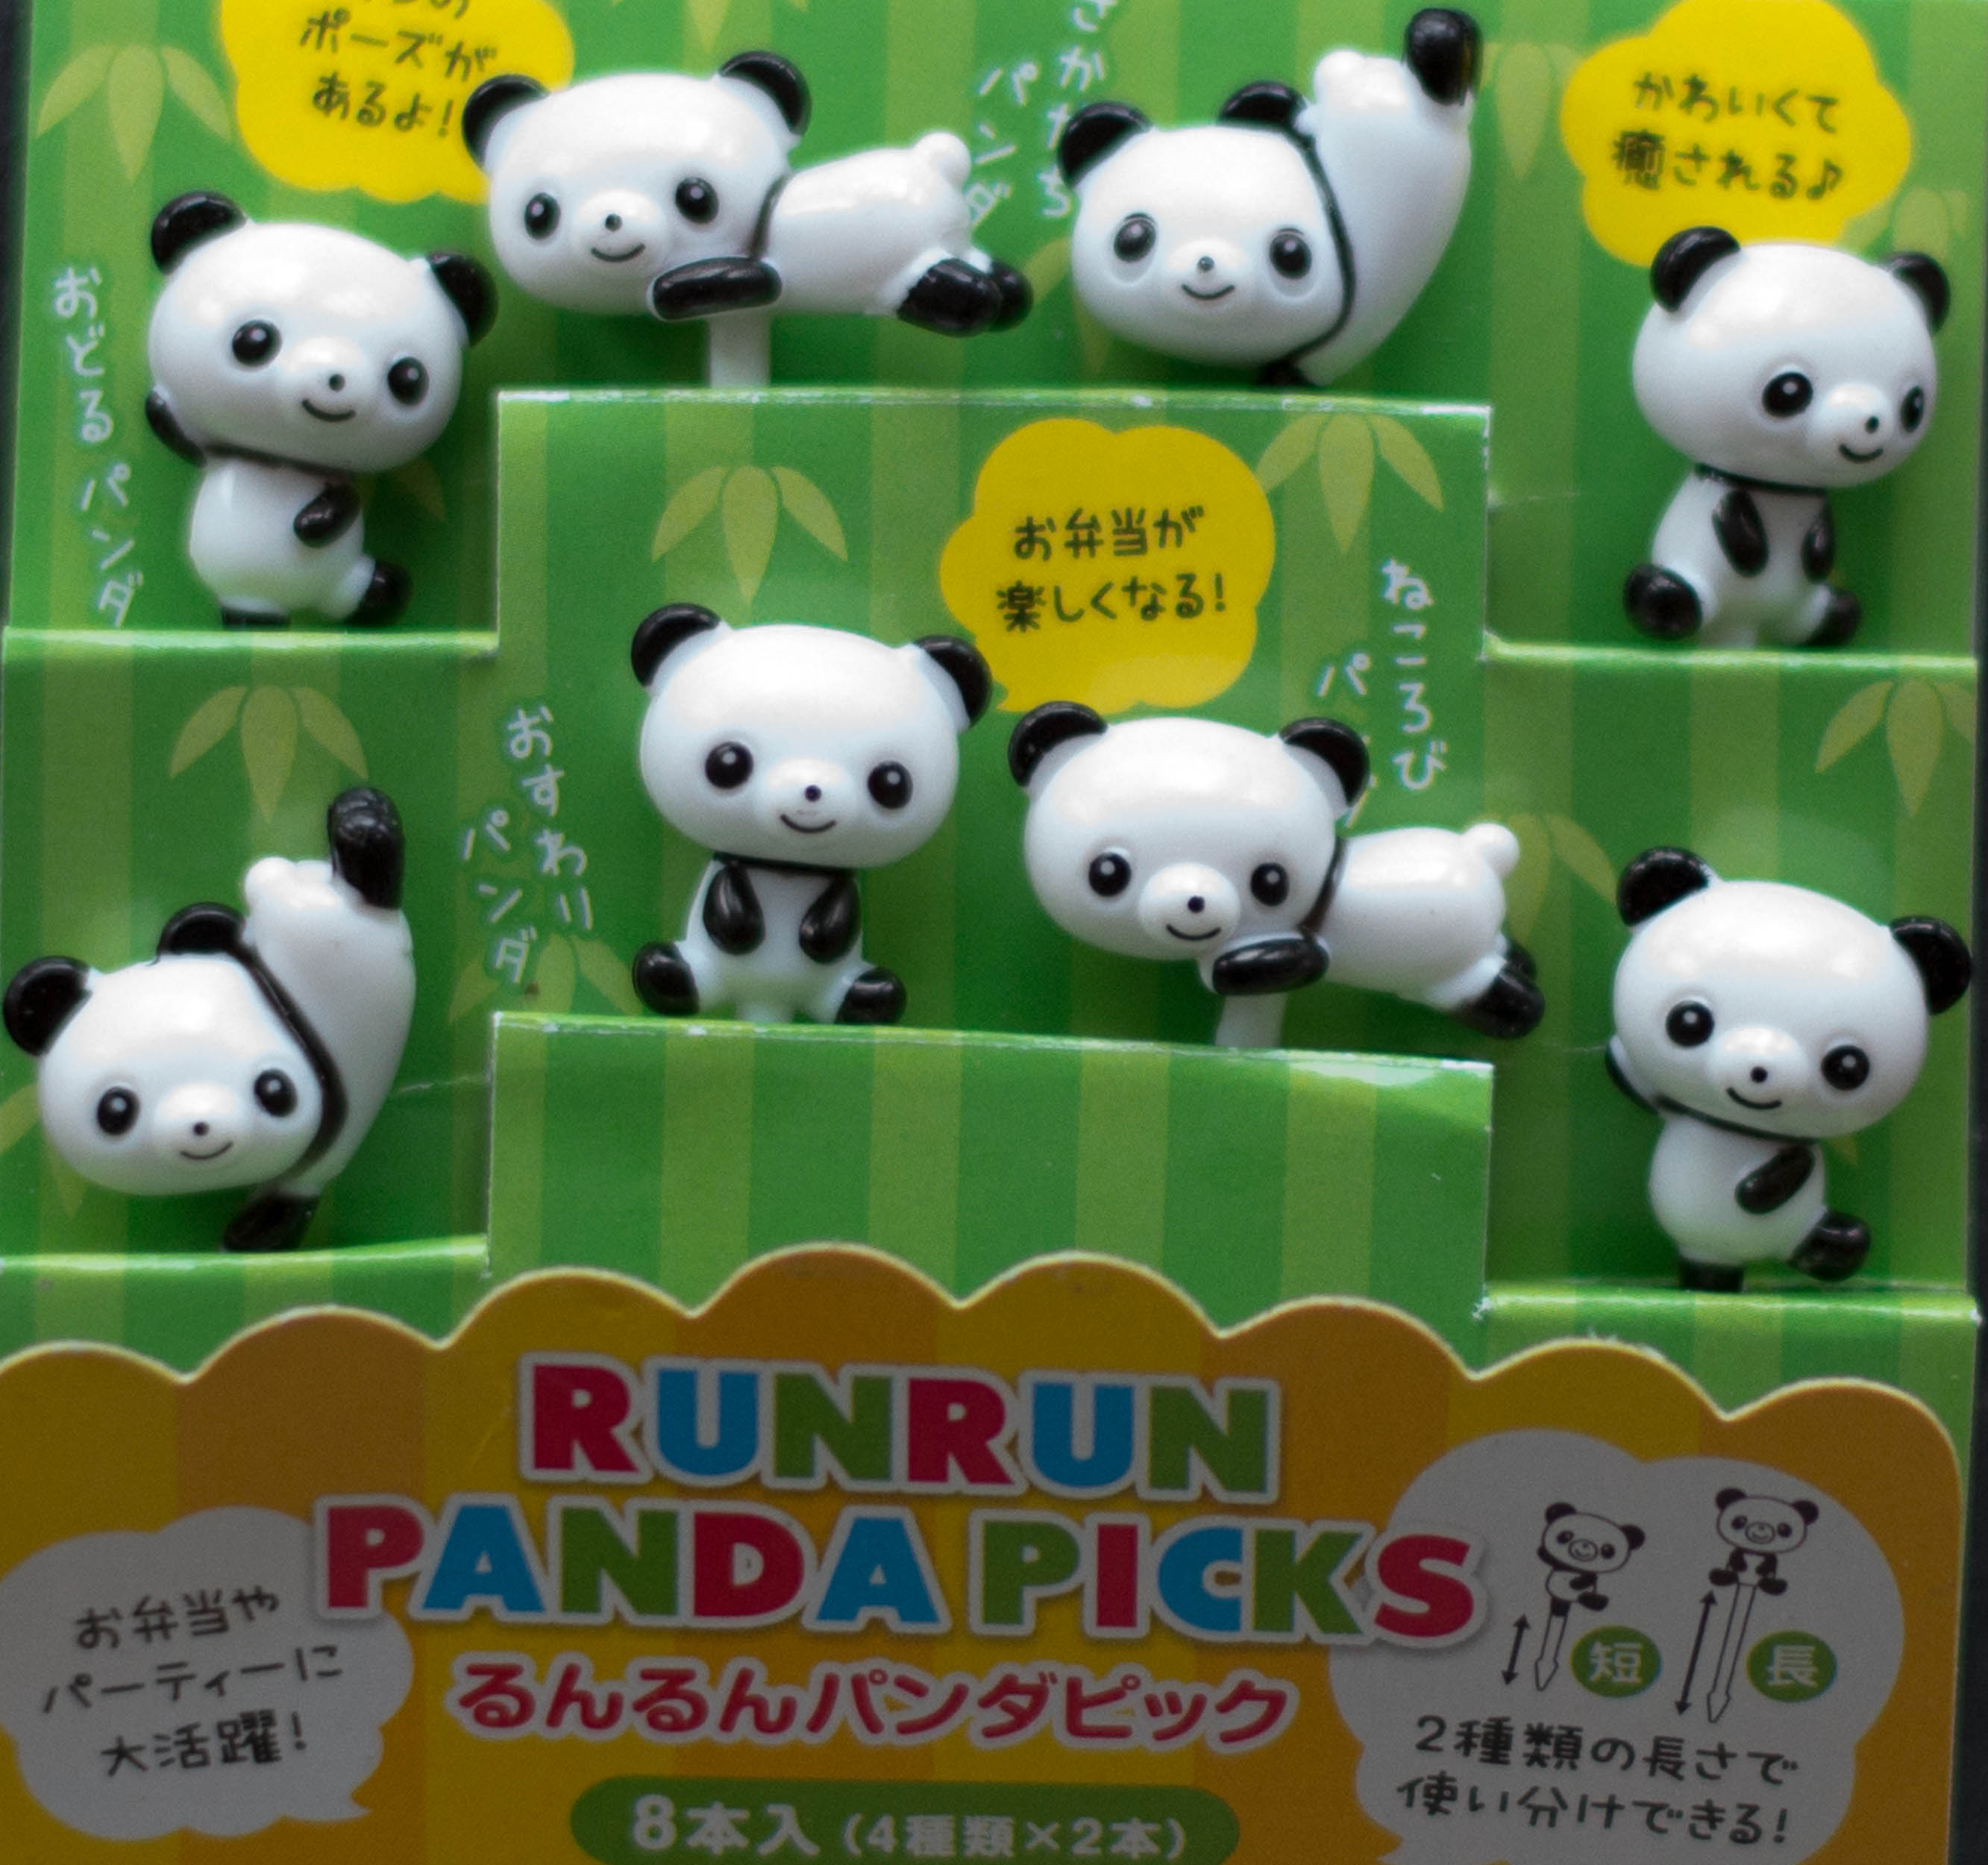 Panda Foodpicks für Lunchboxen